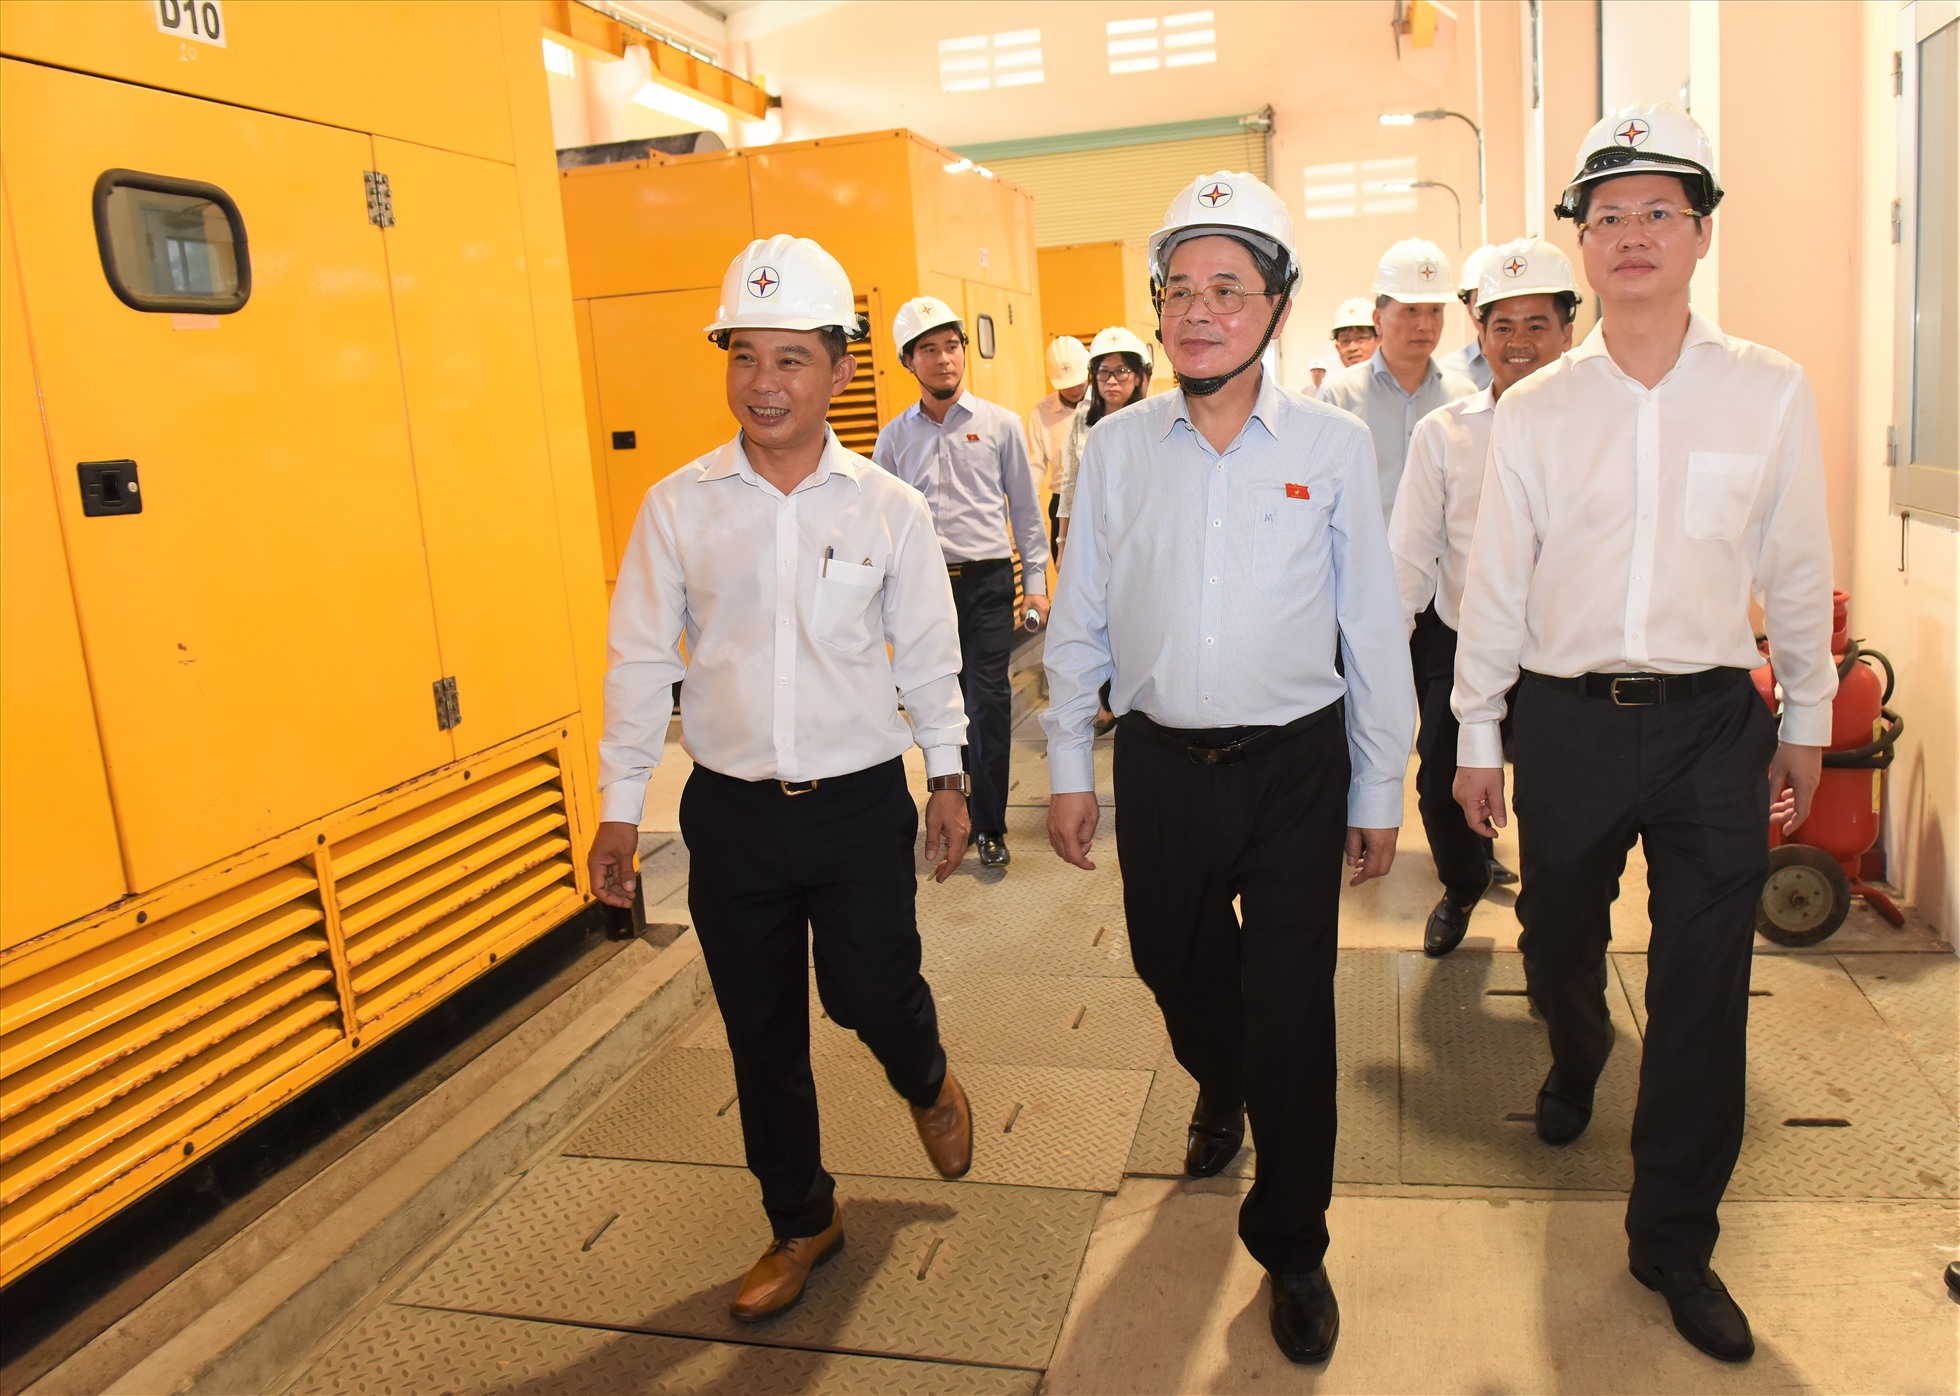 Phó Chủ tịch Quốc hội Nguyễn Đức Hải cùng đoàn công tác tới thăm Nhà máy Phát điện Phú Quý, nơi phát điện 24/24 cho huyện đảo. Ảnh: Phạm Duy